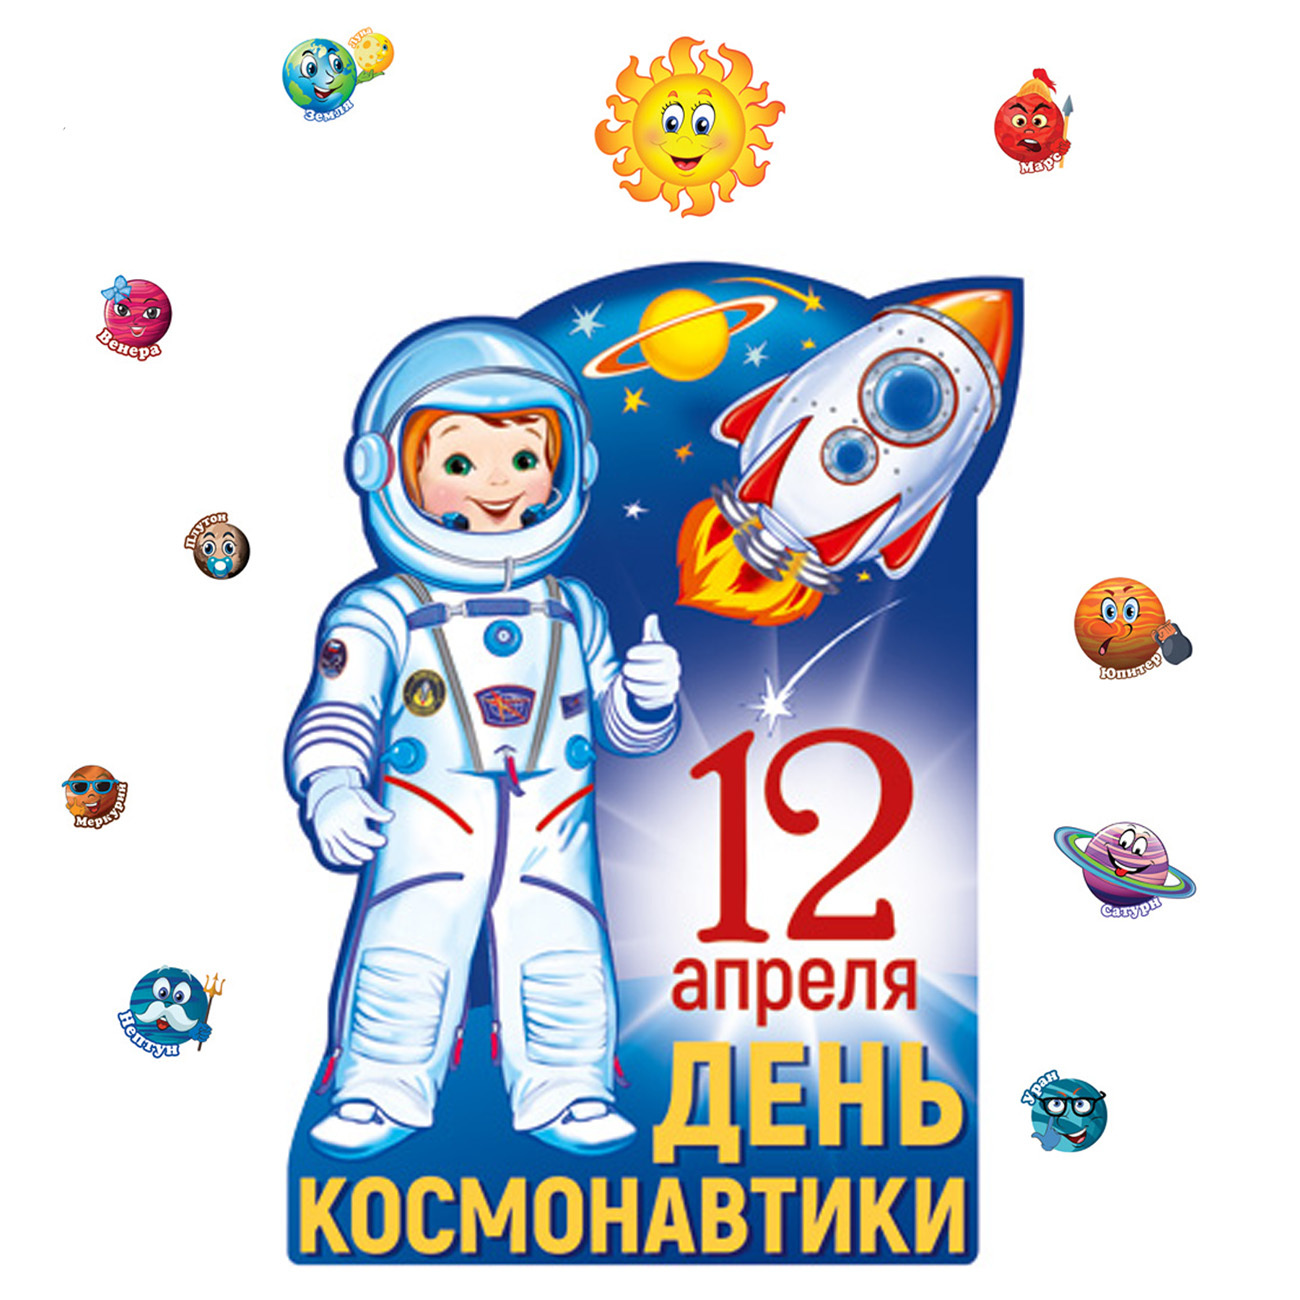 12 Апреля день космонавтики для детей. Открытки с днем космонавтики 12 апреля. 11 Апреля день космонавтики. Магнит день космонавтики 12 апреля. Включи день космонавтиков